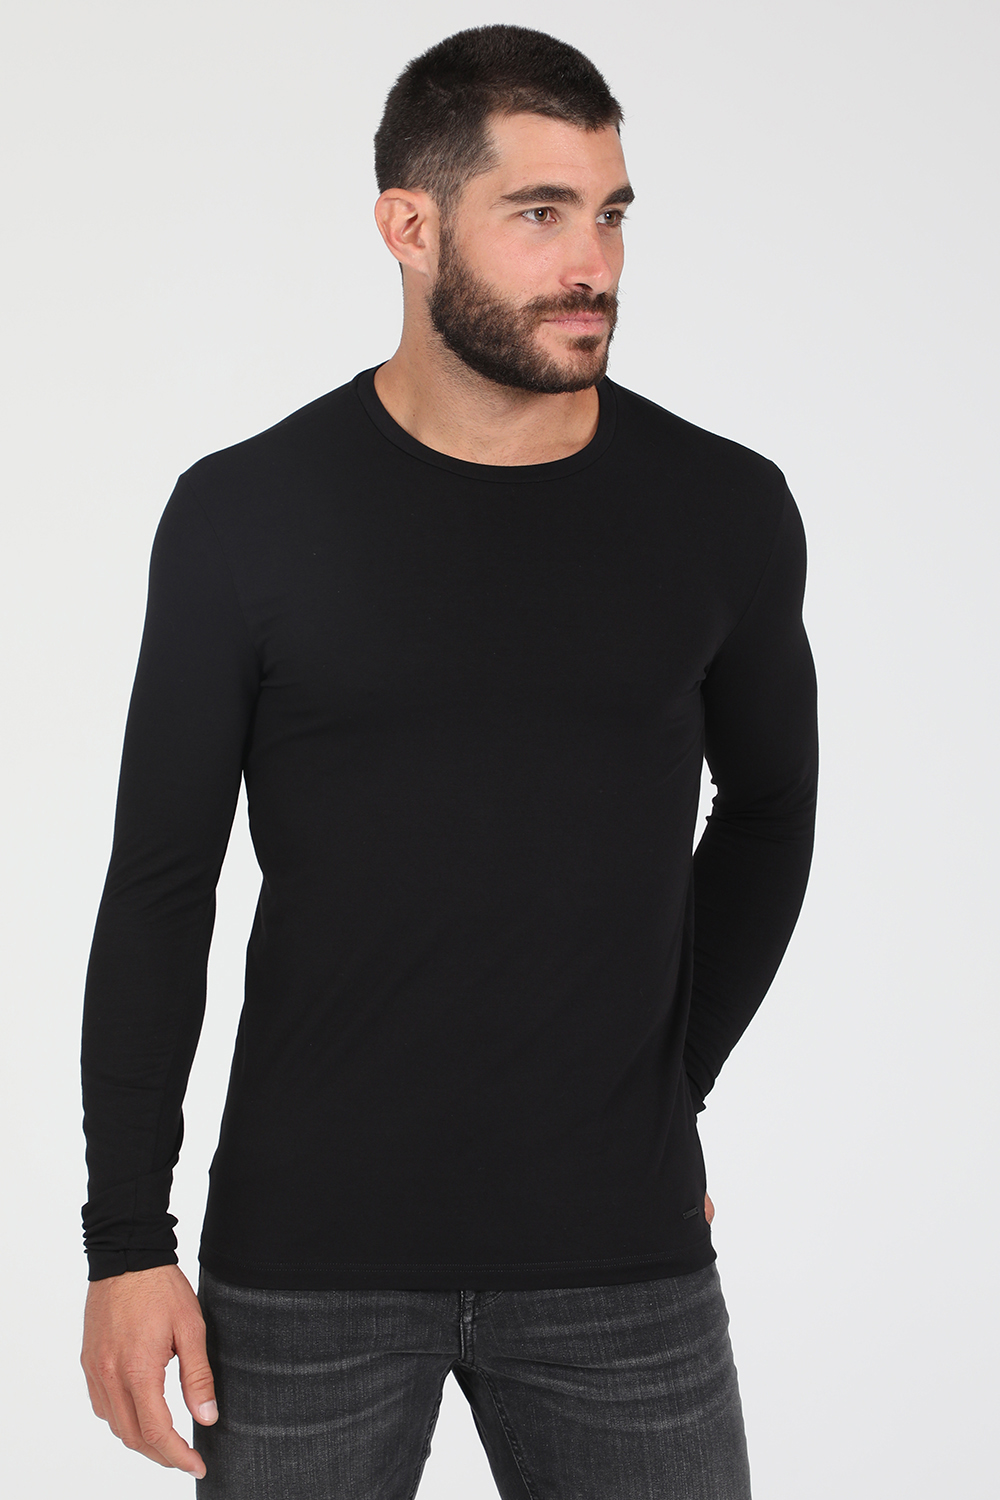 Ανδρικά/Ρούχα/Μπλούζες/Μακρυμάνικες GAUDI - Ανδρική μπλούζα GAUDI μαύρη